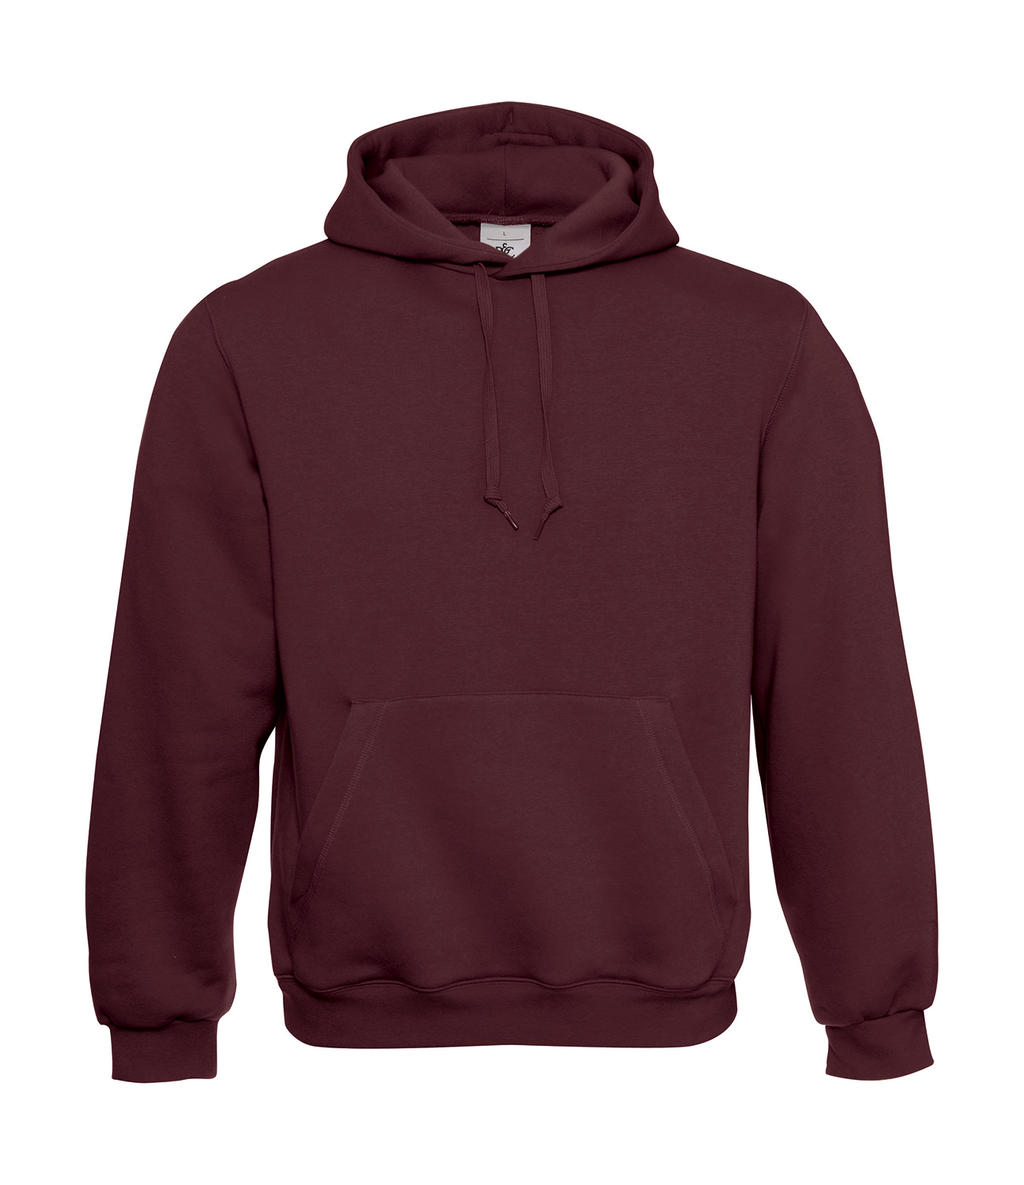  Hooded Sweatshirt in Farbe Burgundy